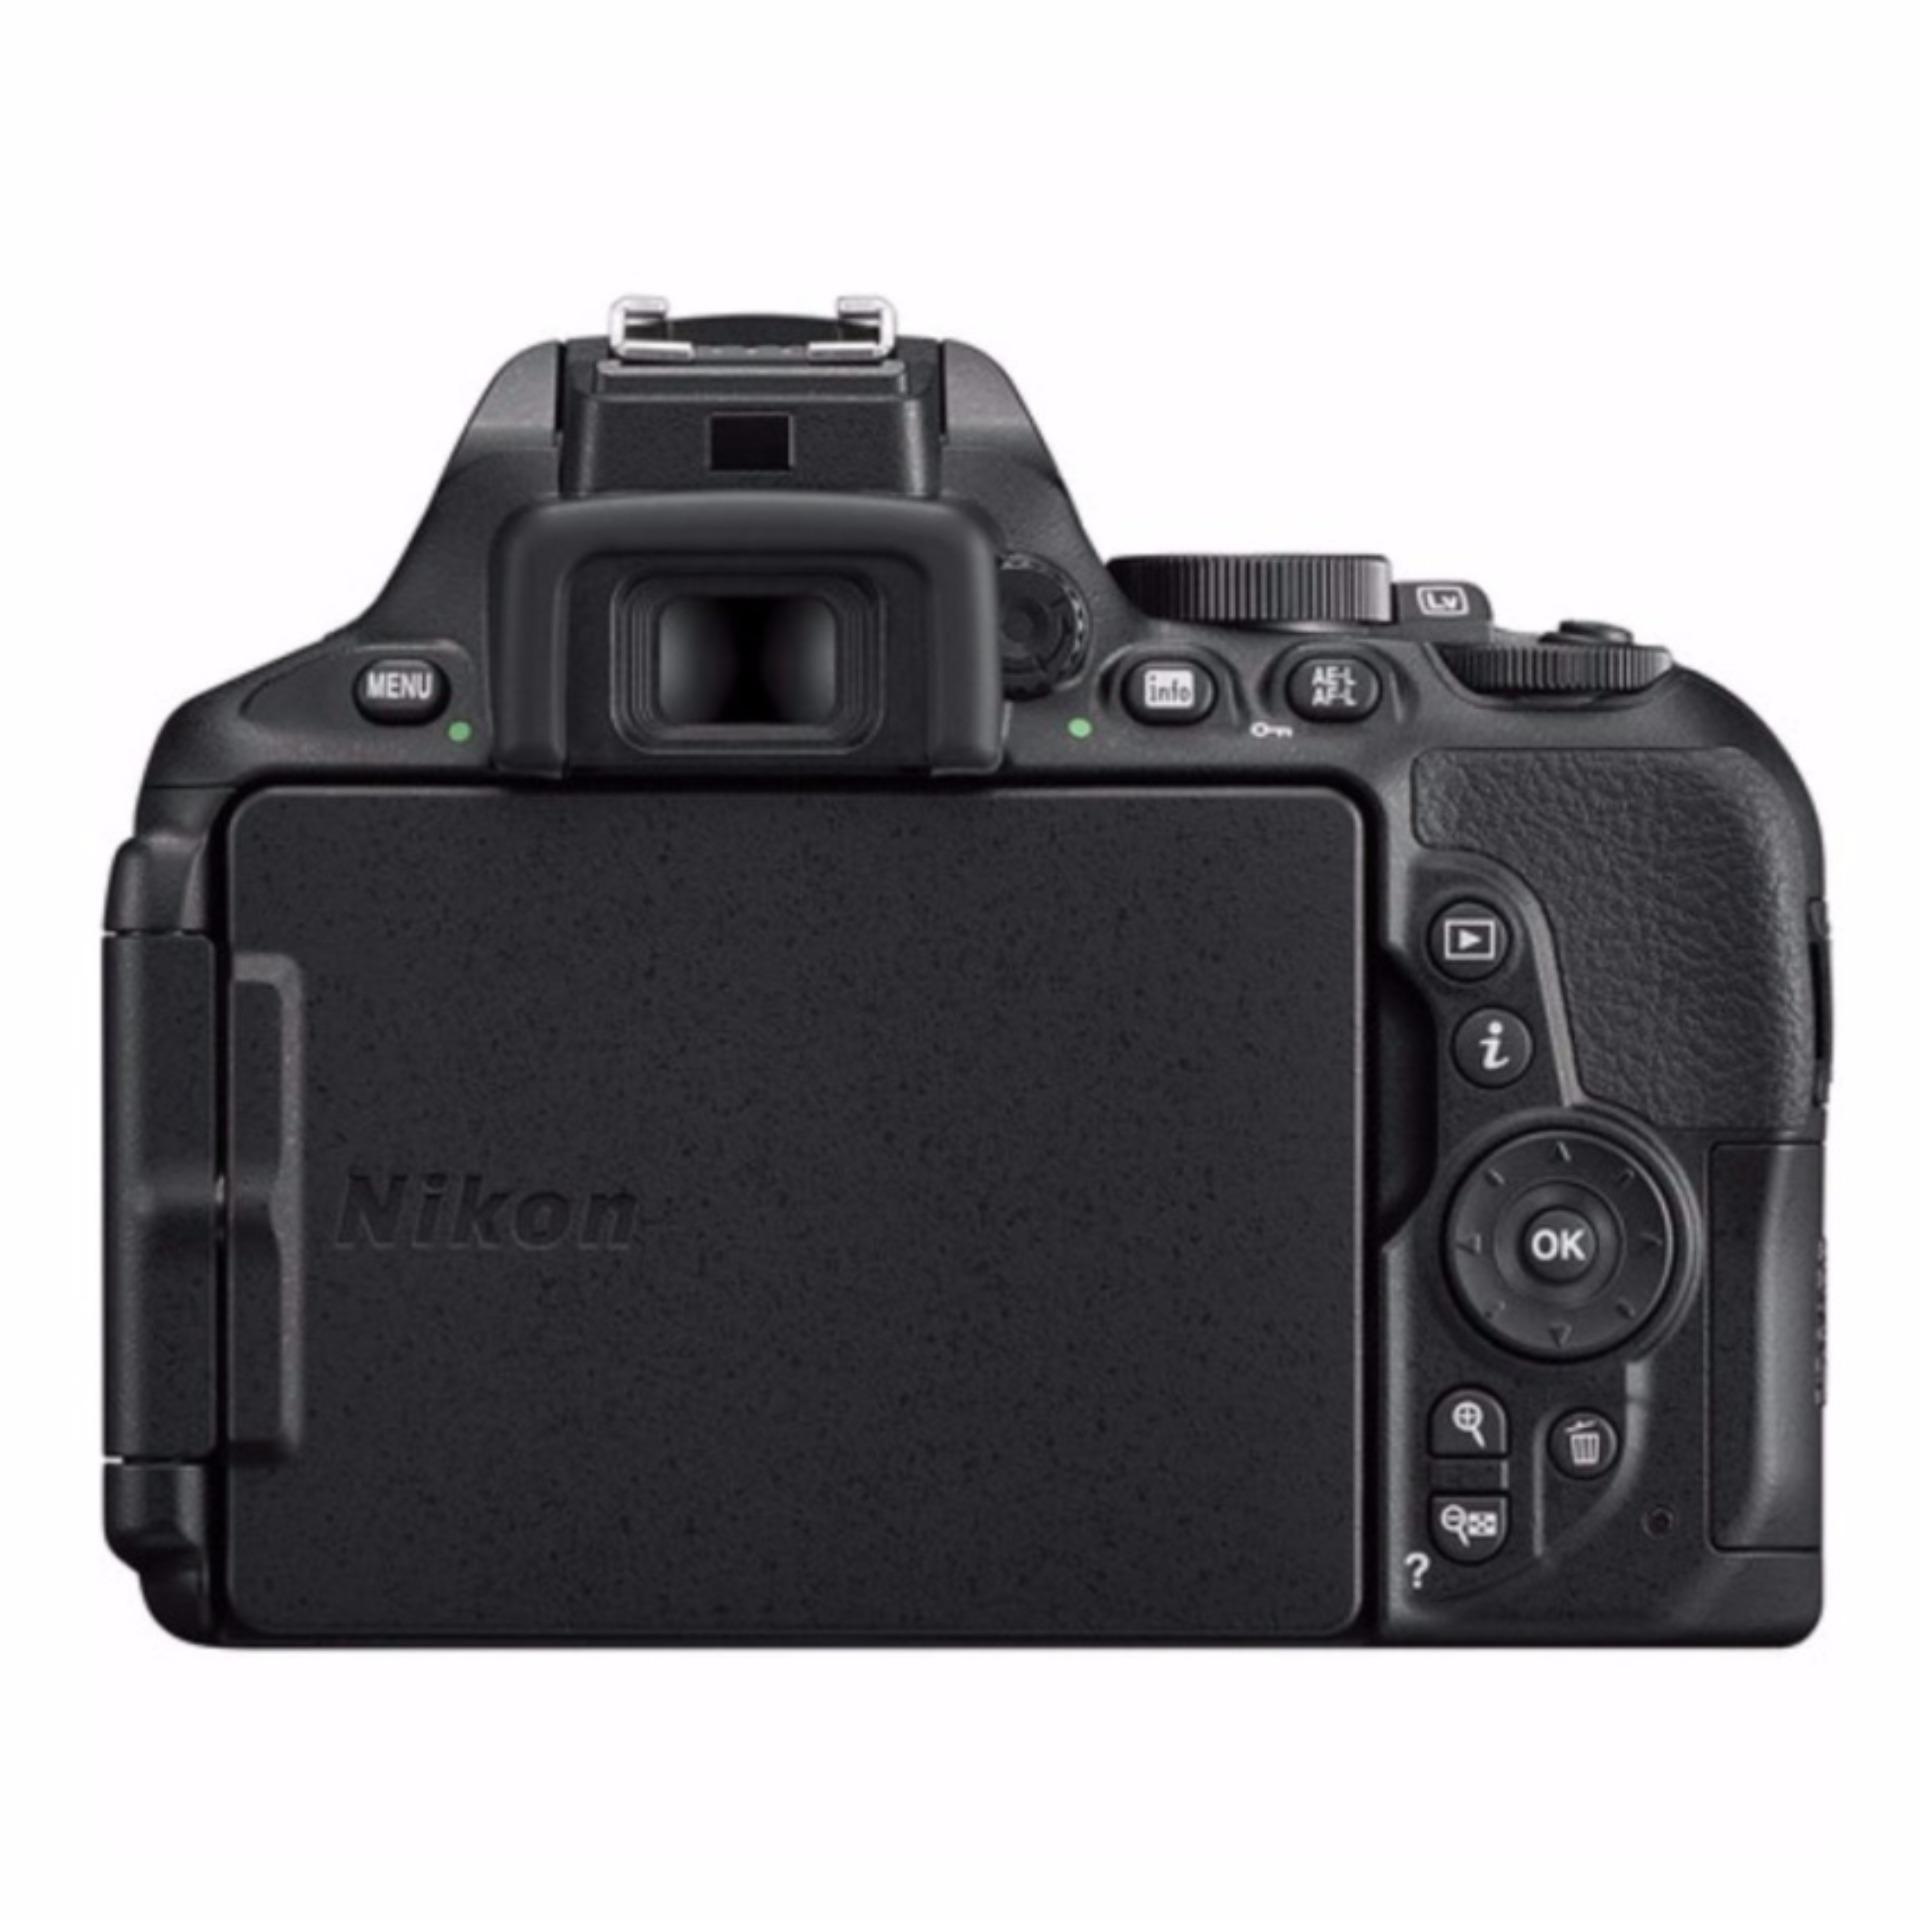 Nikon D5600 + AF-P 18-55mm f3.5-5.6G VR kit set export only(Black)